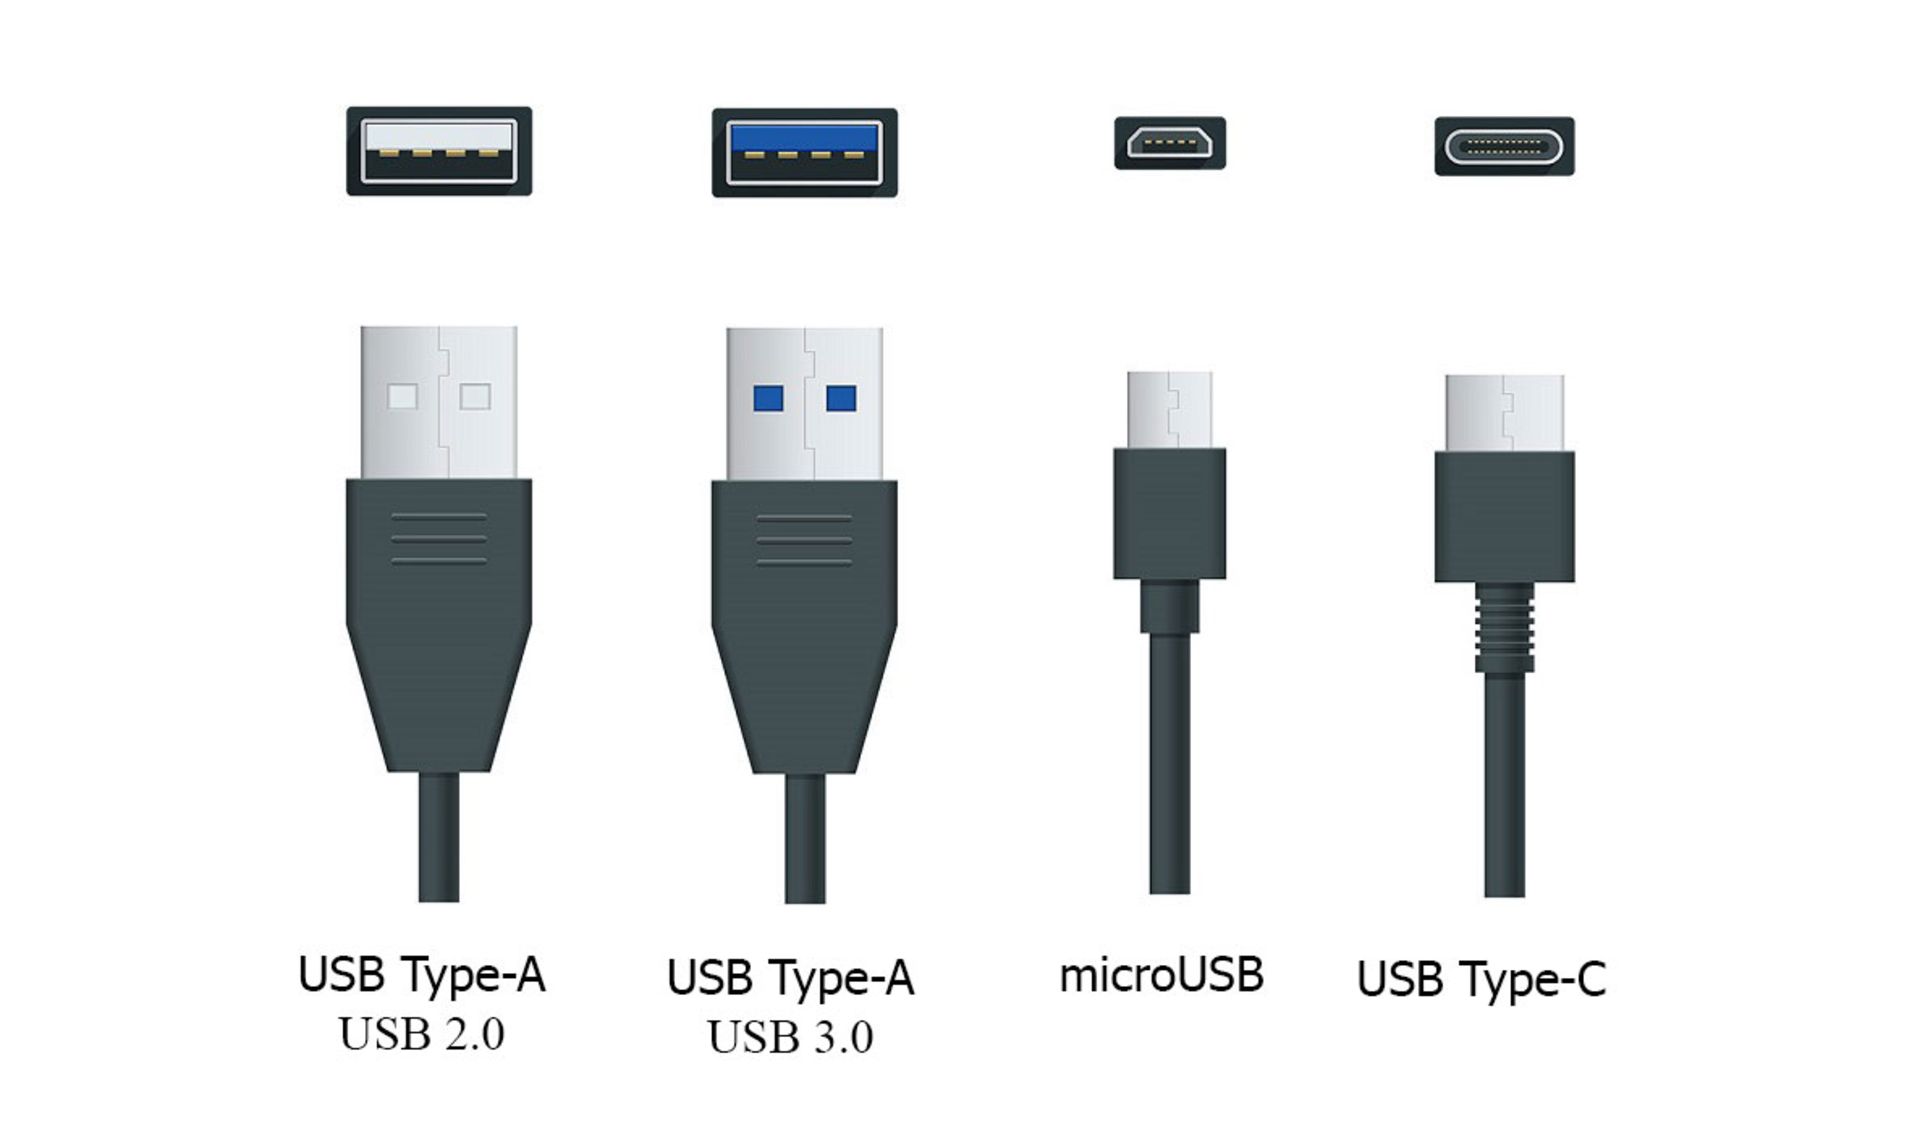 مرجع متخصصين ايران رابط هاي مختلف USB در كنار درگاه هاي مرتبط با هريك